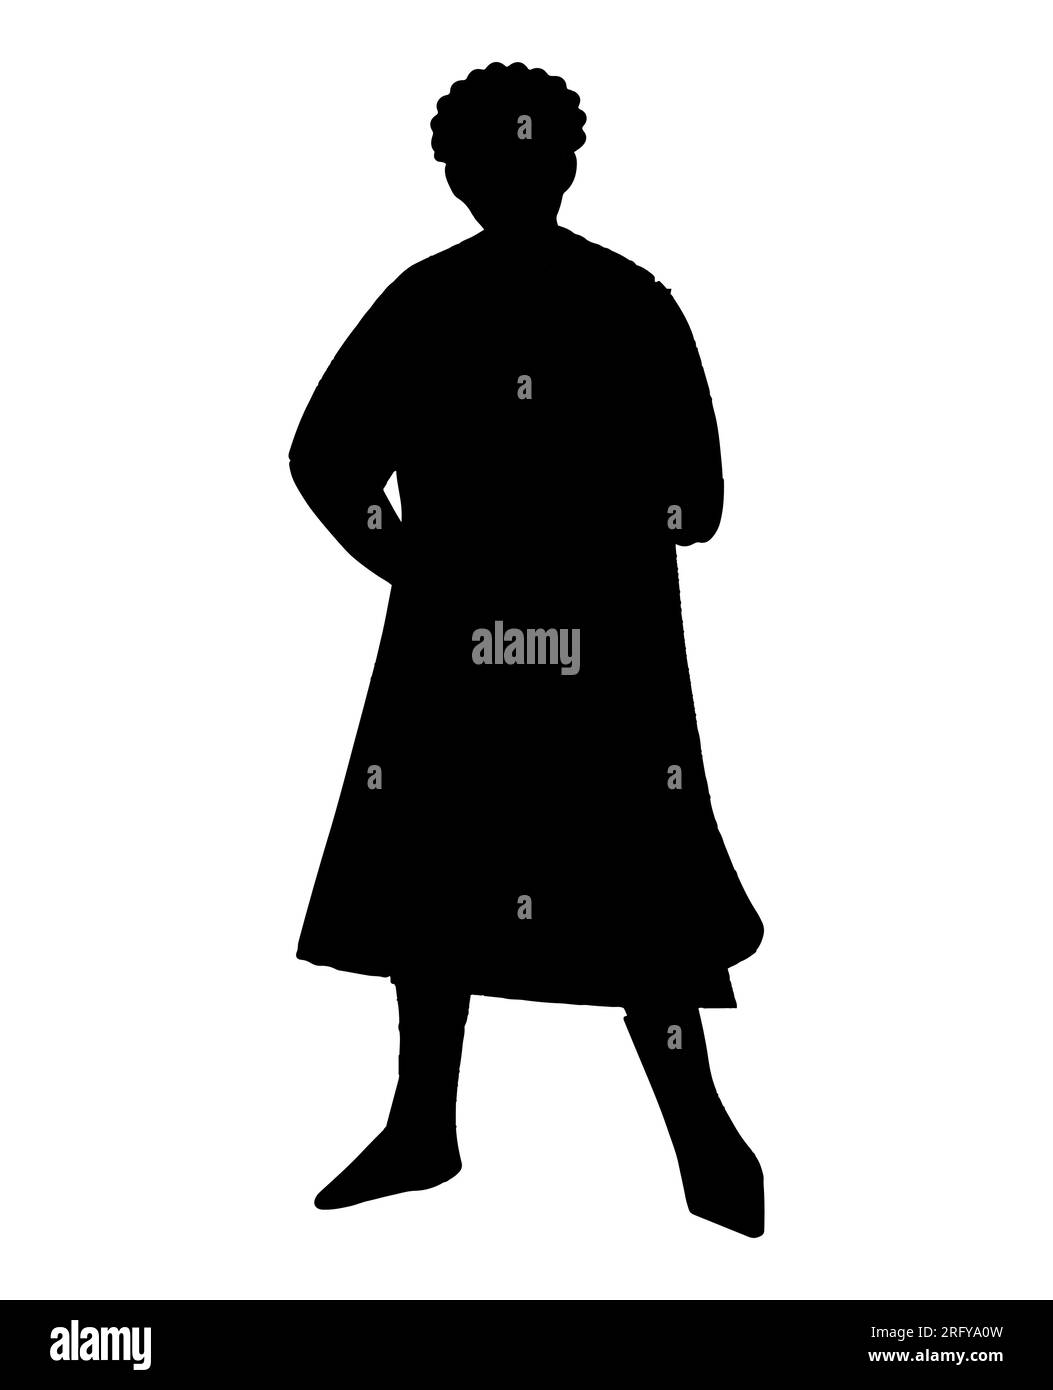 Schwarze Silhouette einer Person, die gerade steht, Ein Ganzkörperporträt der Figur, Vektor isoliert auf weißem Hintergrund Stock Vektor